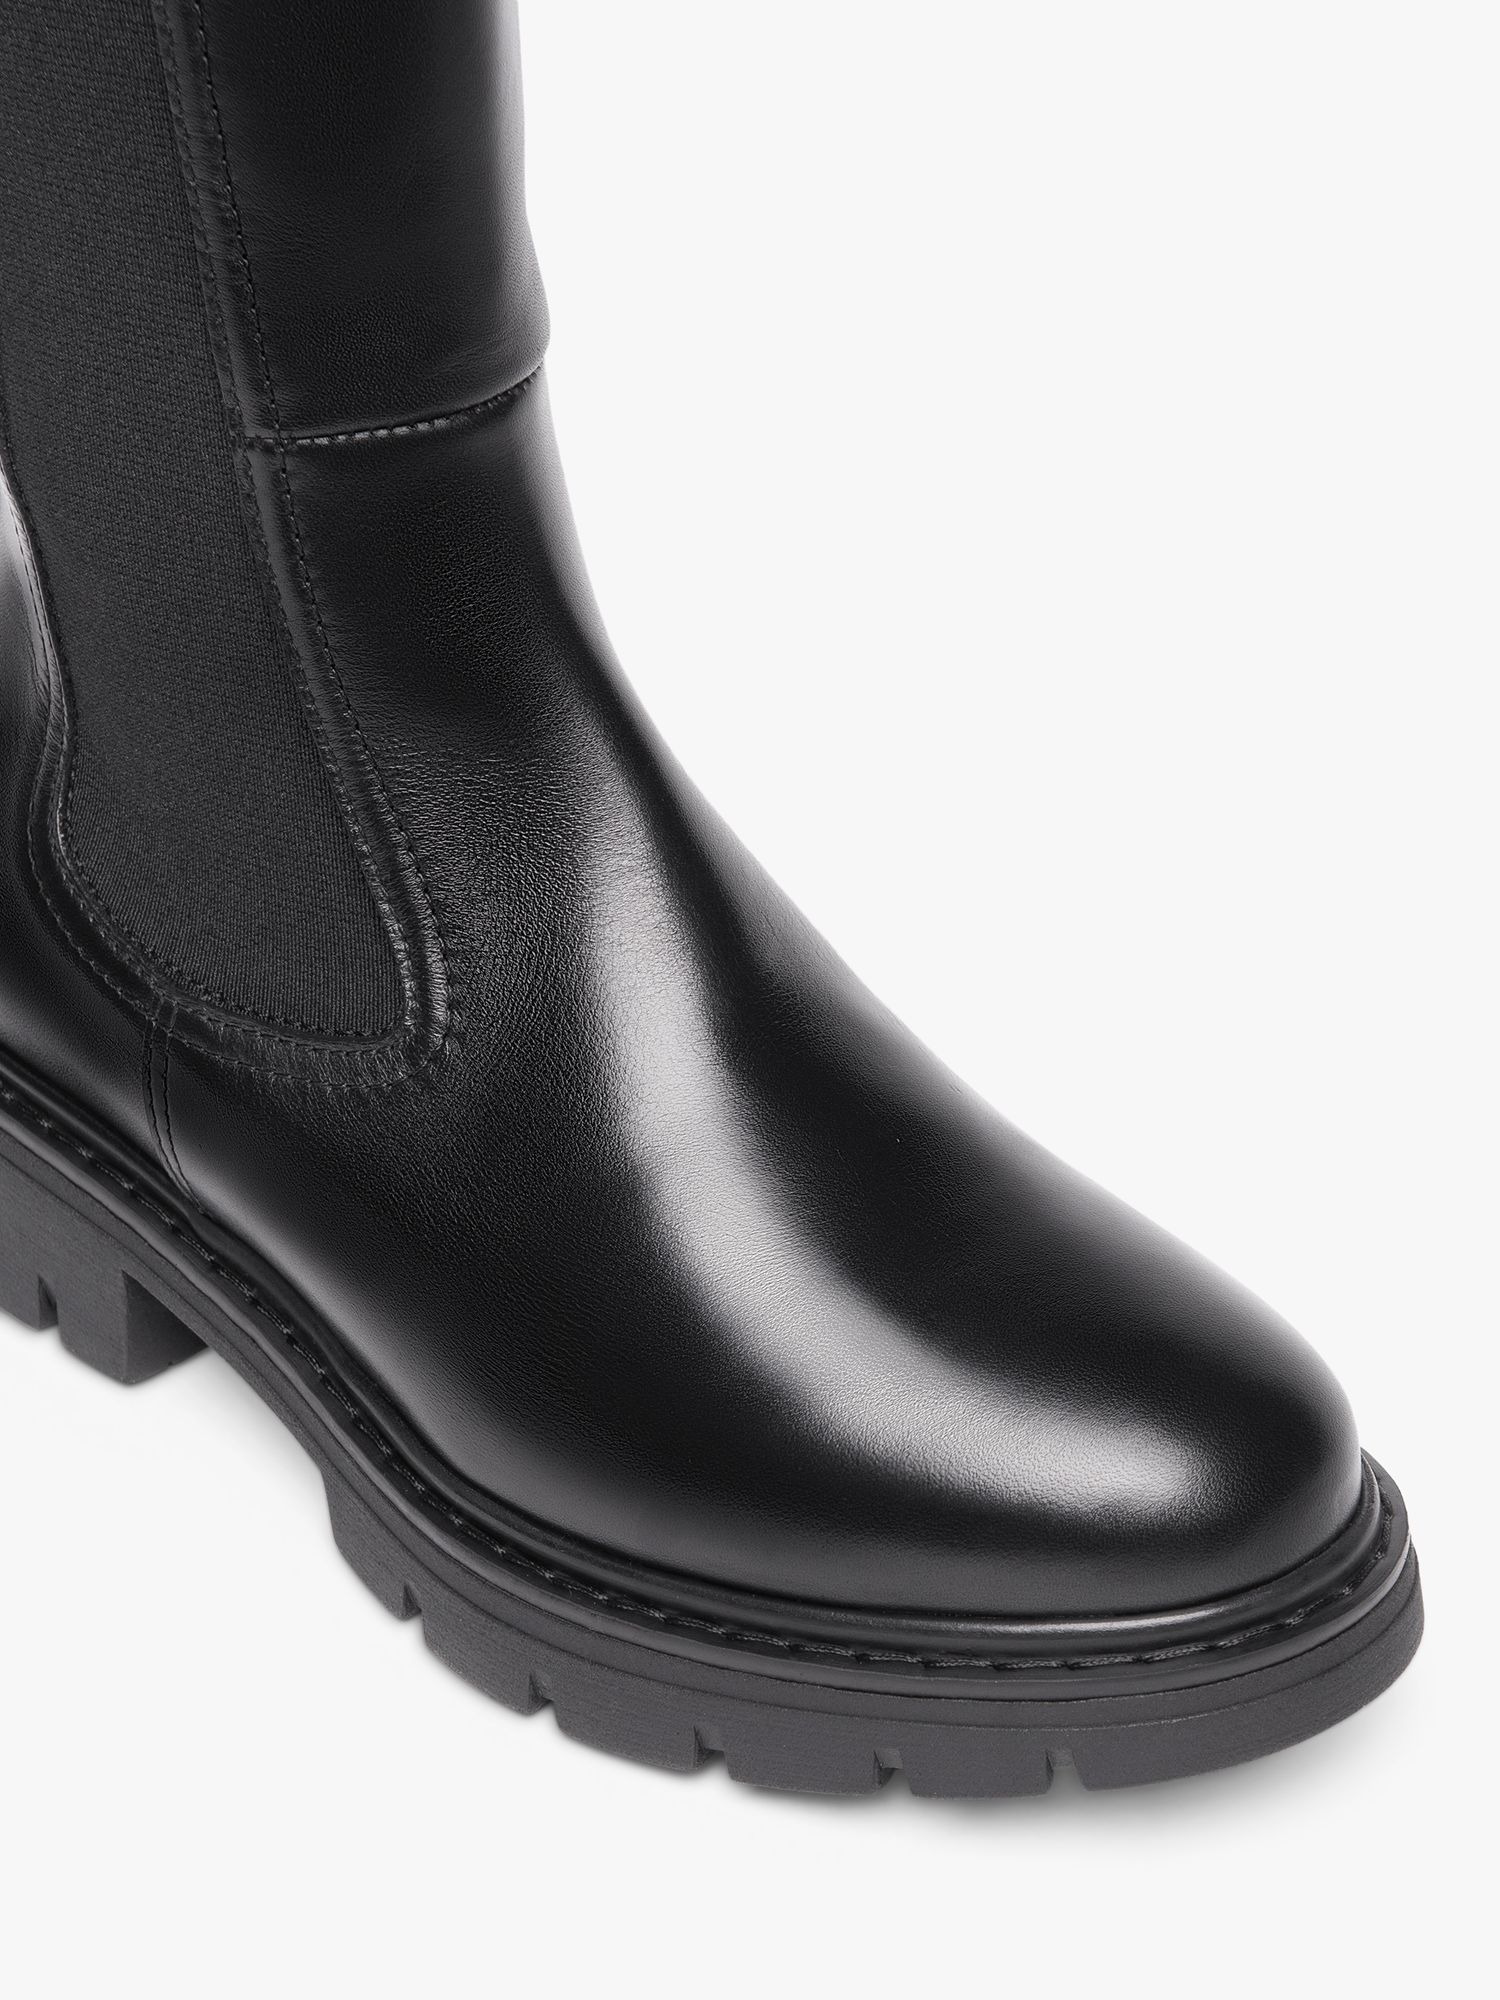 NeroGiardini Slip On Knee High Leather Boots, Black at John Lewis ...